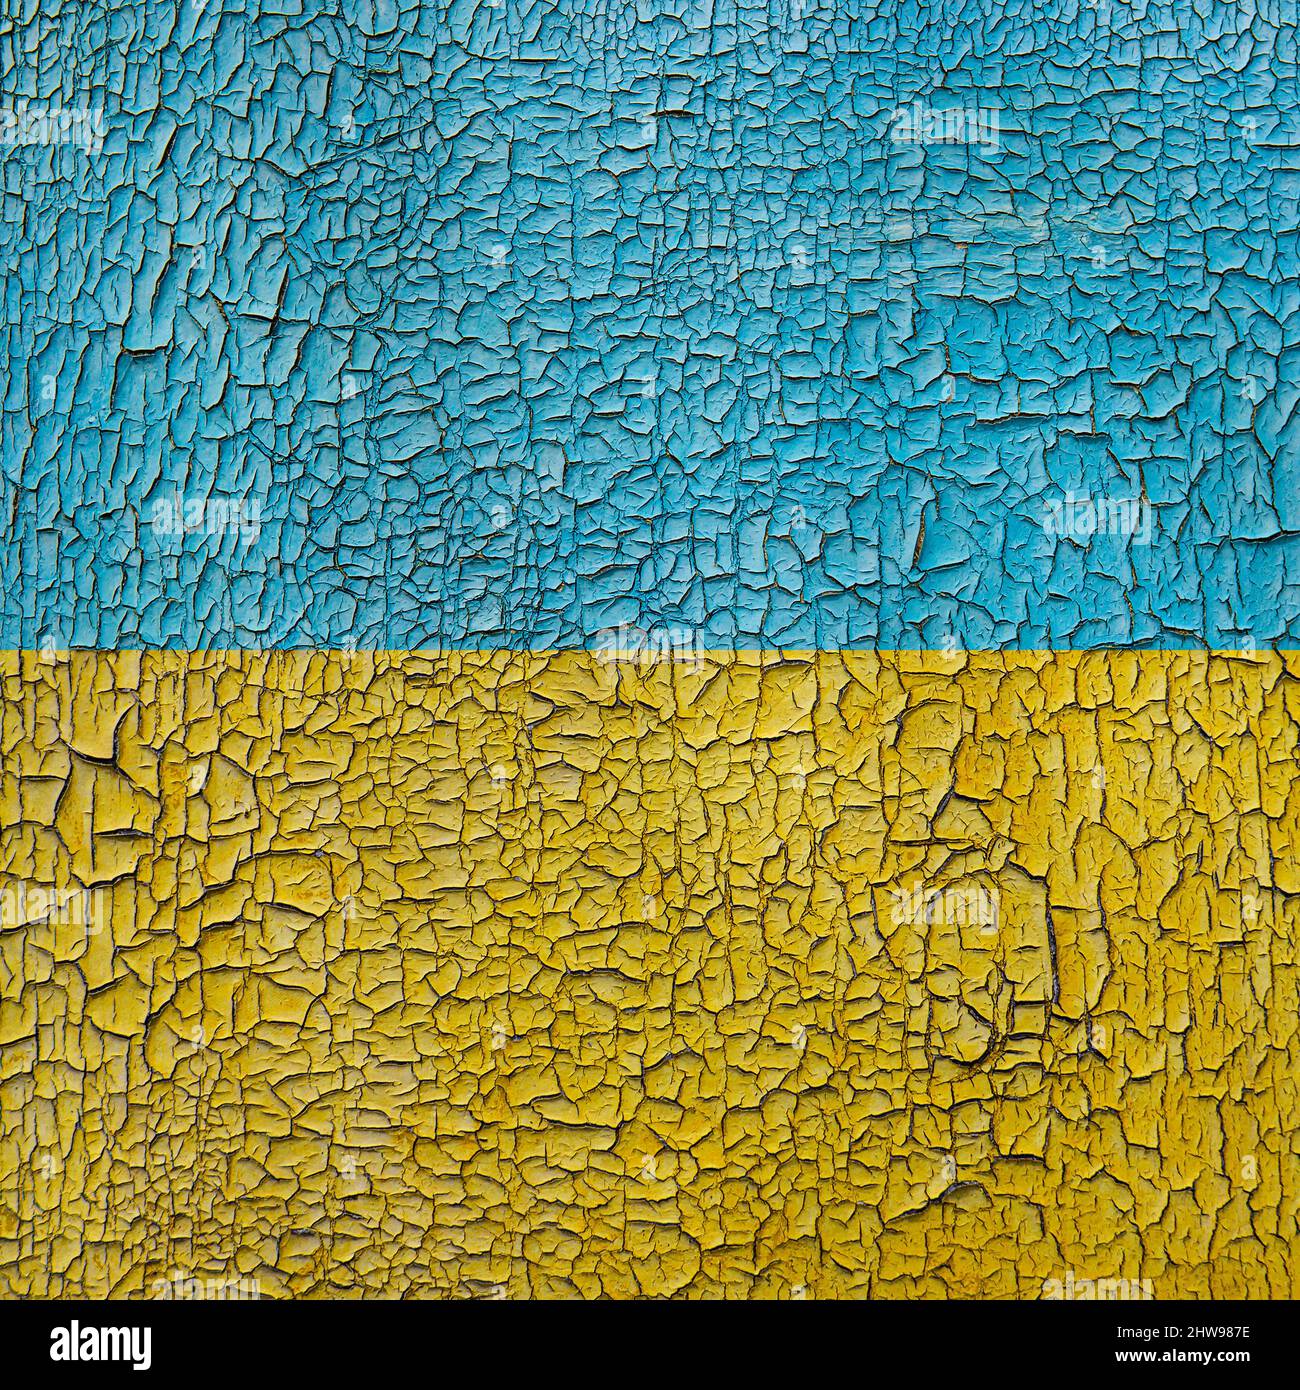 Flag of Ukraine on a cracked grunge background. Square background. Stock Photo